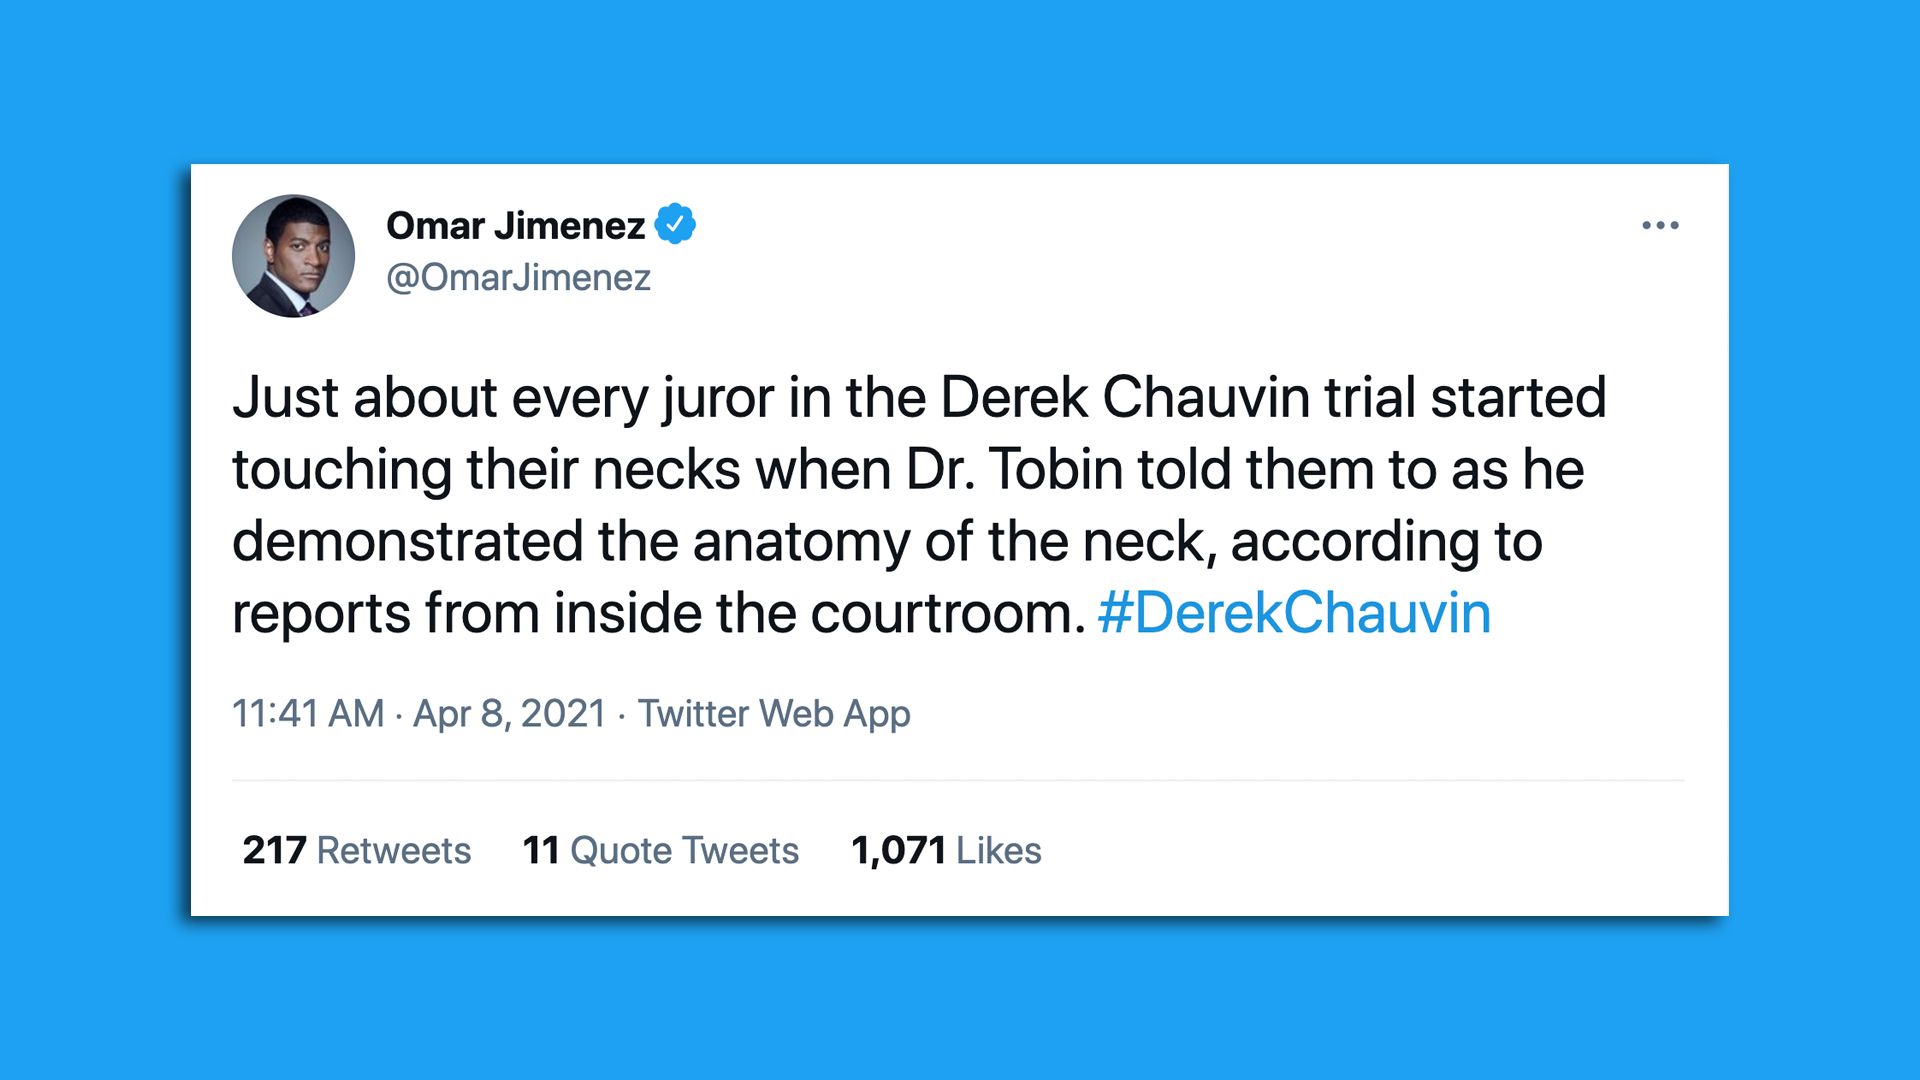 A tweet on the derek chauvin trial